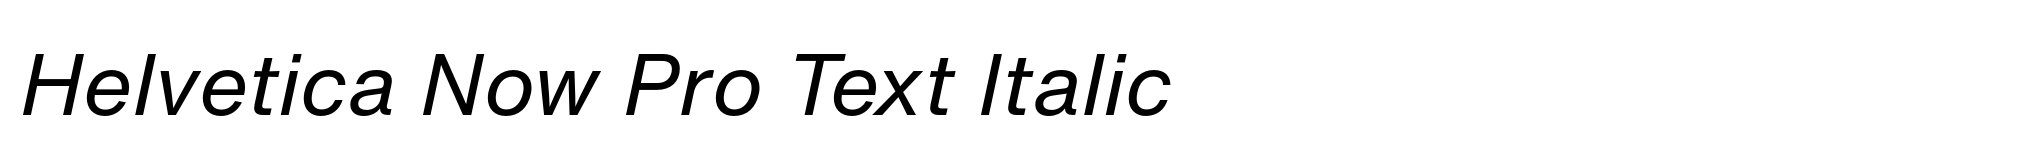 Helvetica Now Pro Text Italic image